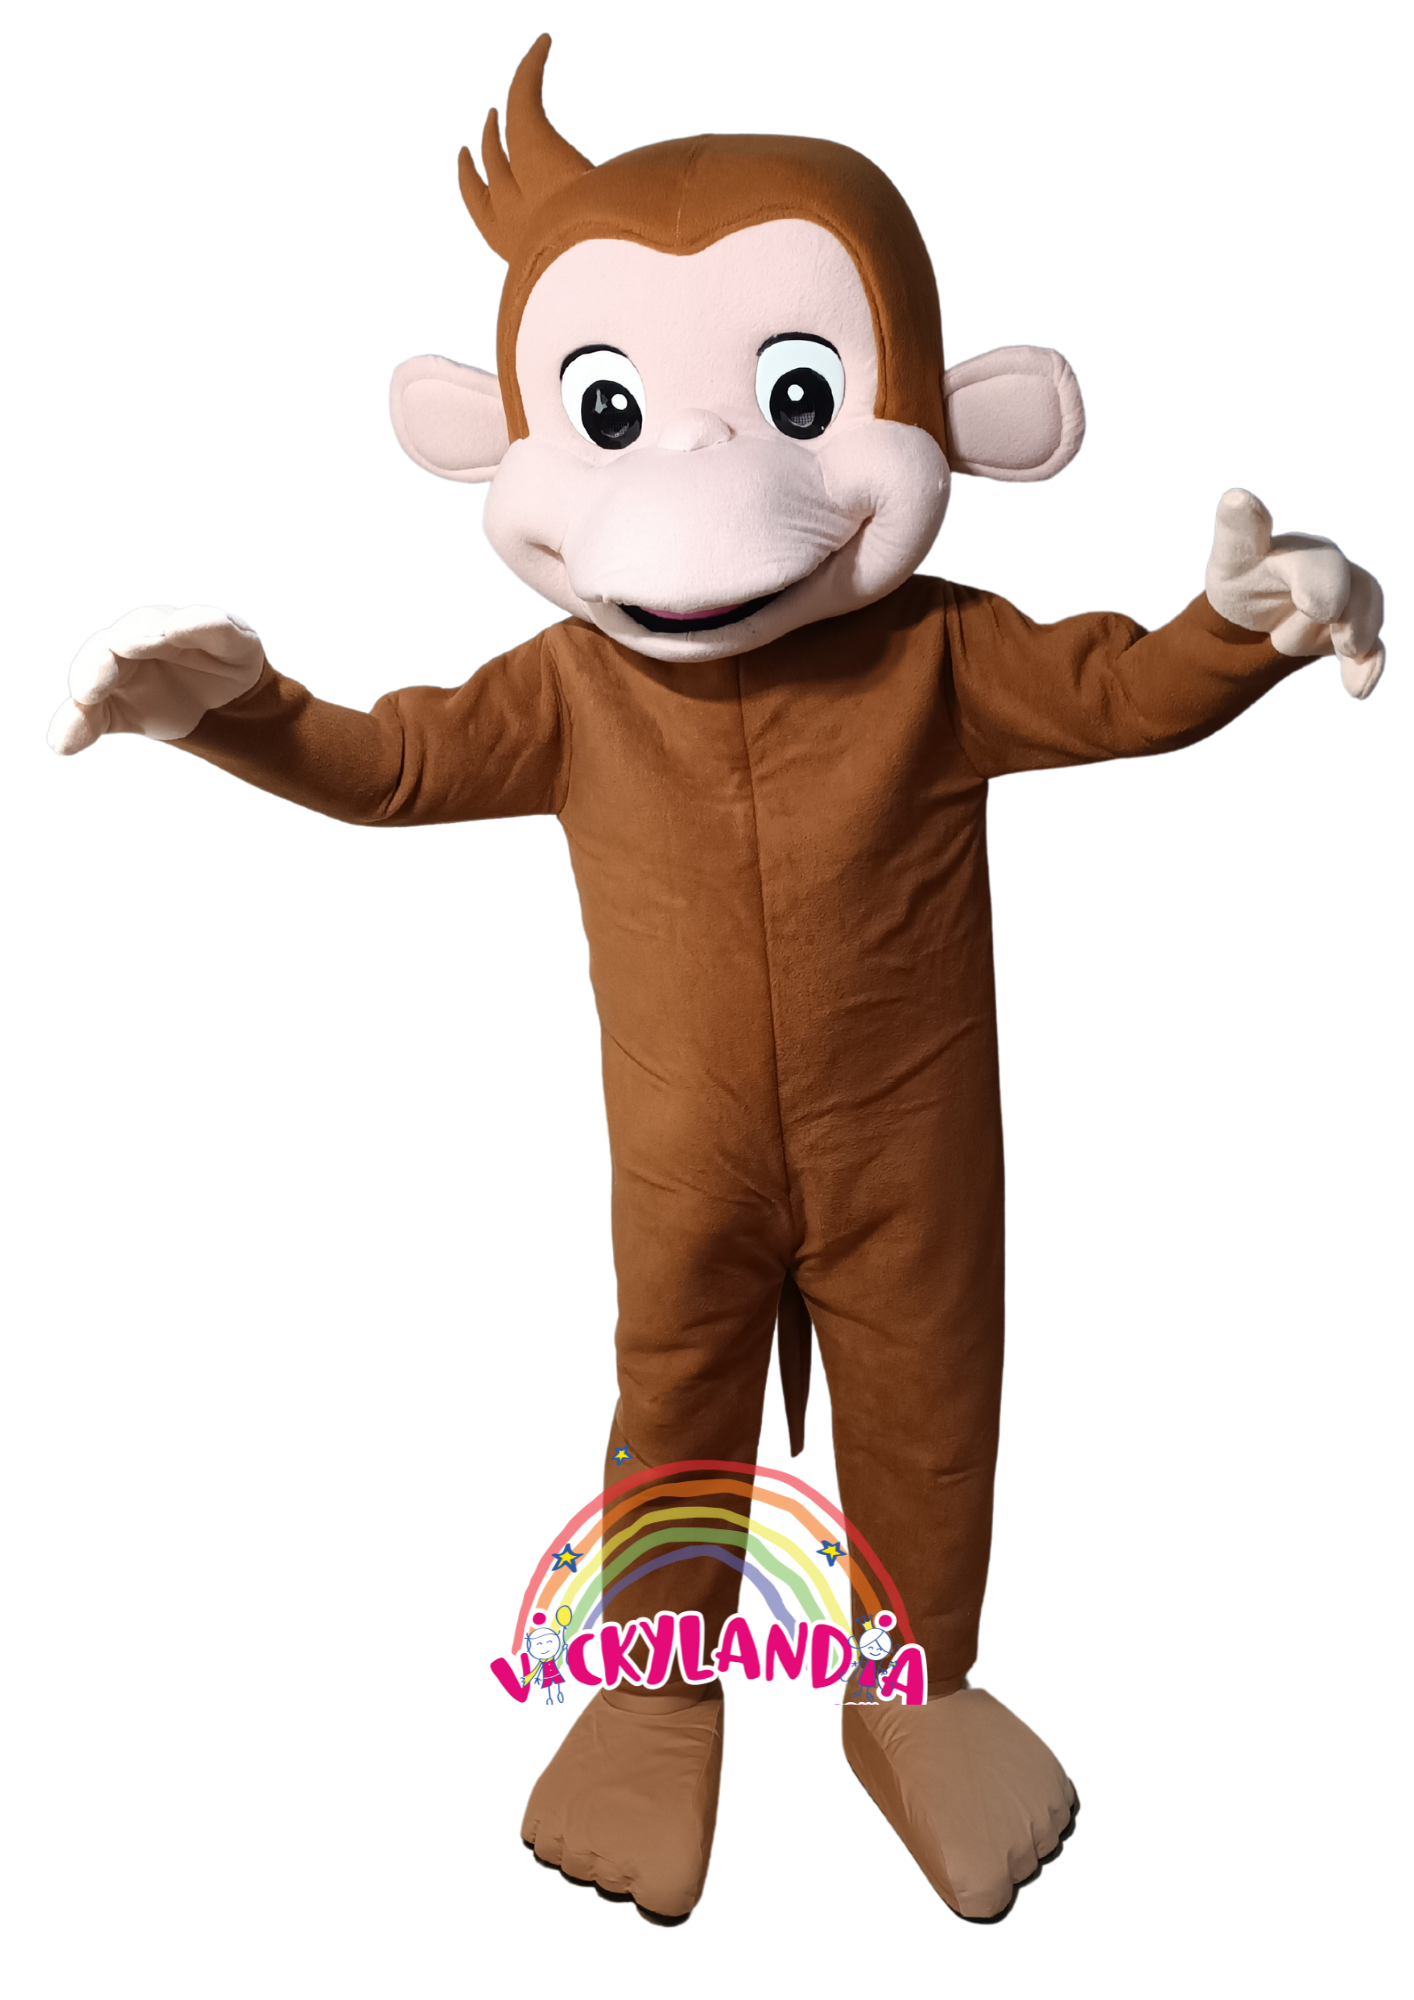 Descubre la magia de nuestro muñeco publicitario de Mono en Vickylandia. Son disfraces cabezones perfectos para fiestas infantiles, shows, cumpleaños, estrategias publicitarias, espectáculos, cabalgatas y cualquier tipo de evento.